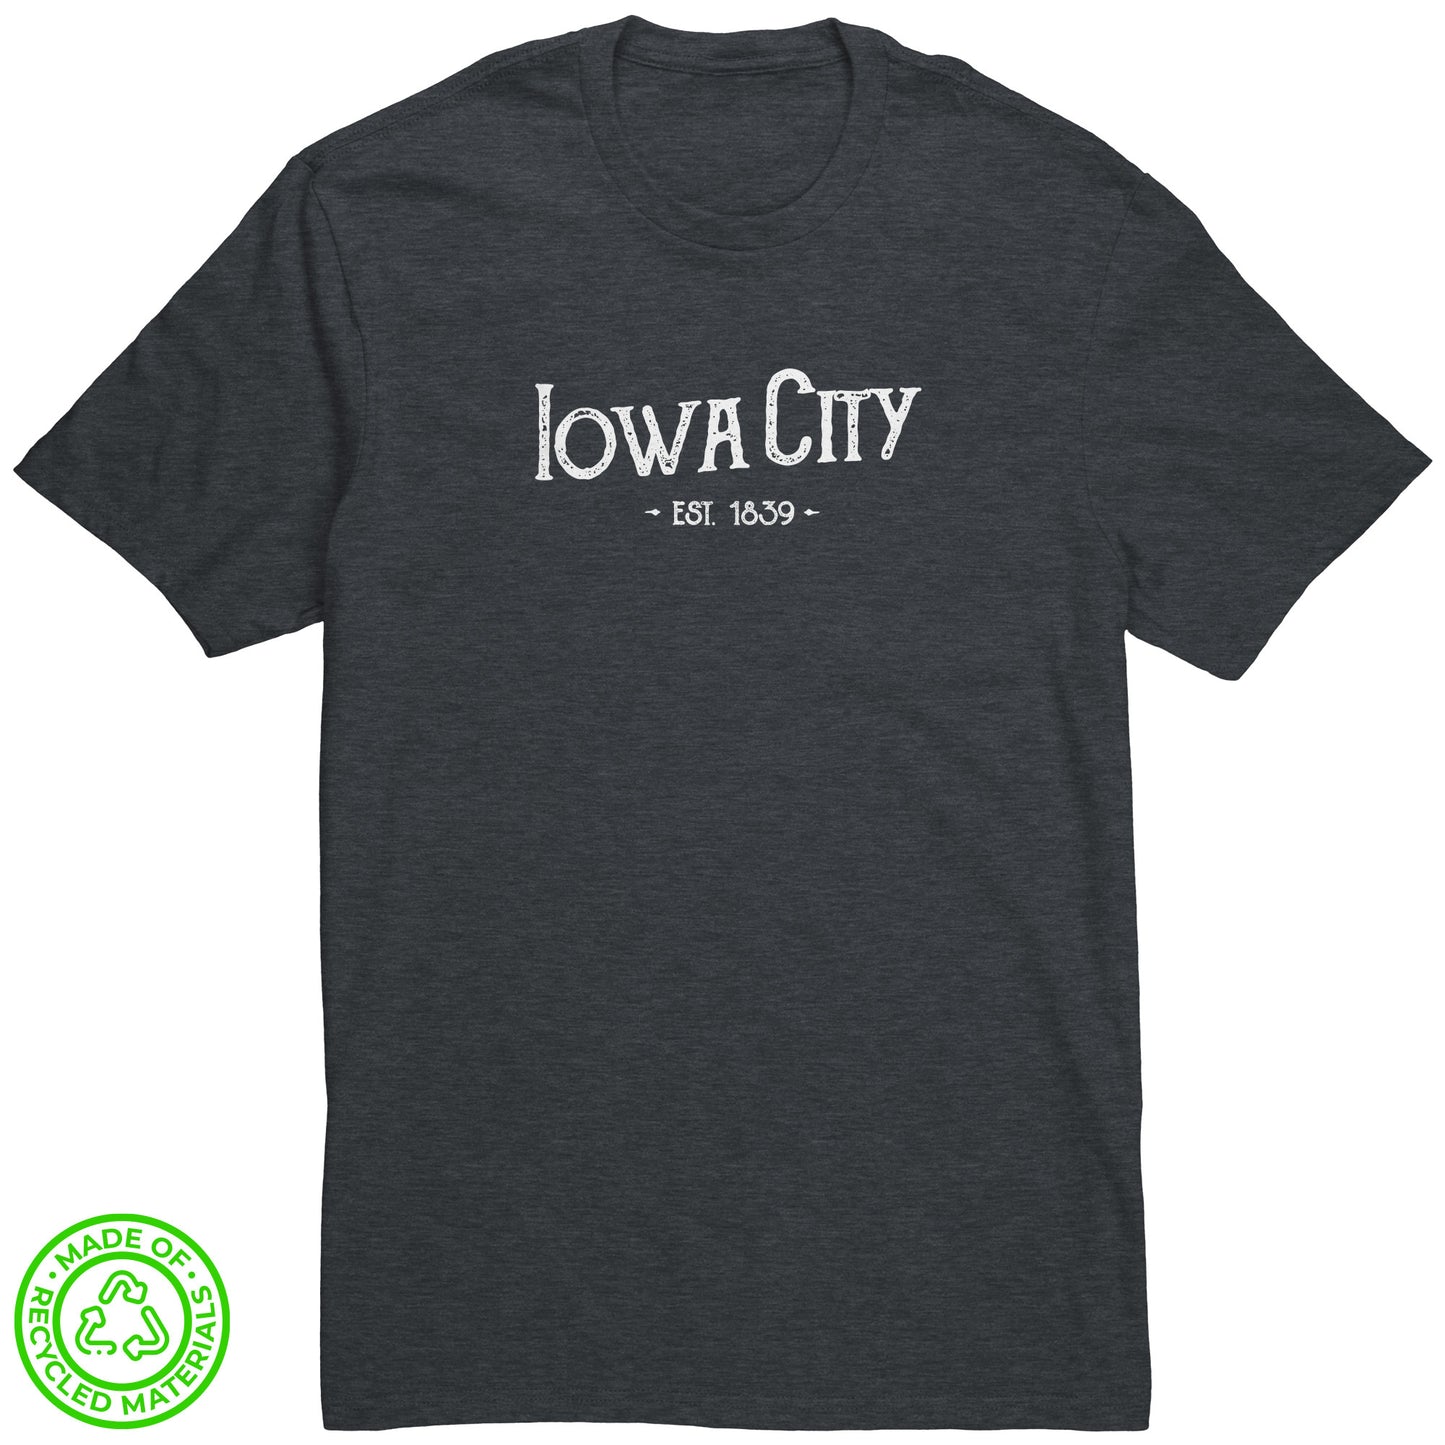 Iowa City Hometown Tee